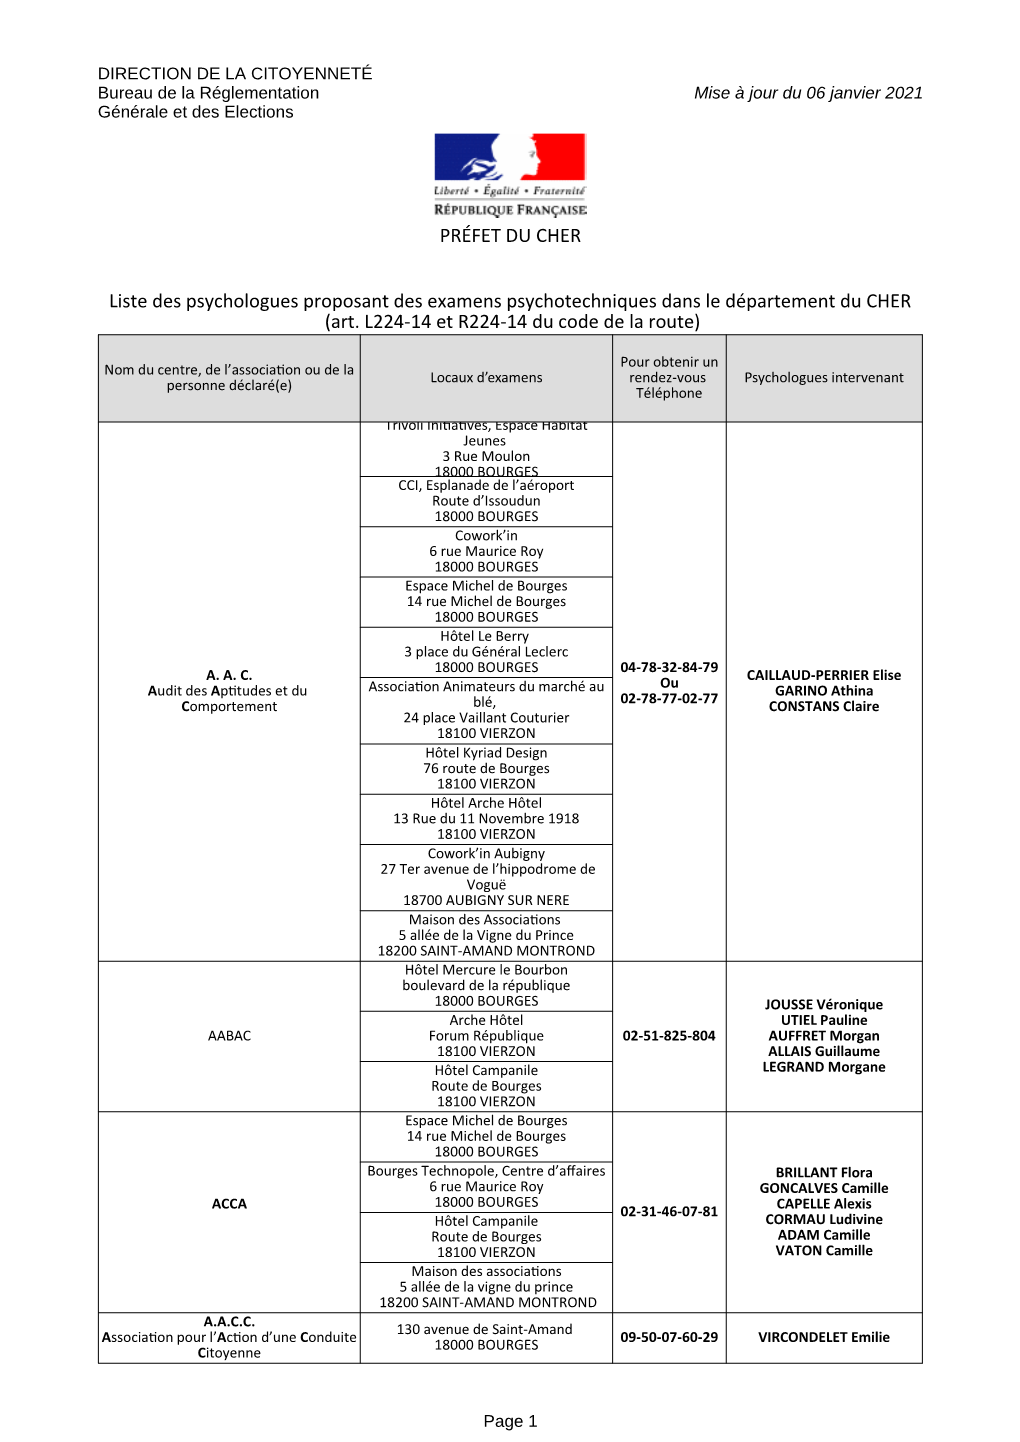 Liste Des Psychologues Proposant Des Examens Psychotechniques Dans Le Département Du CHER (Art